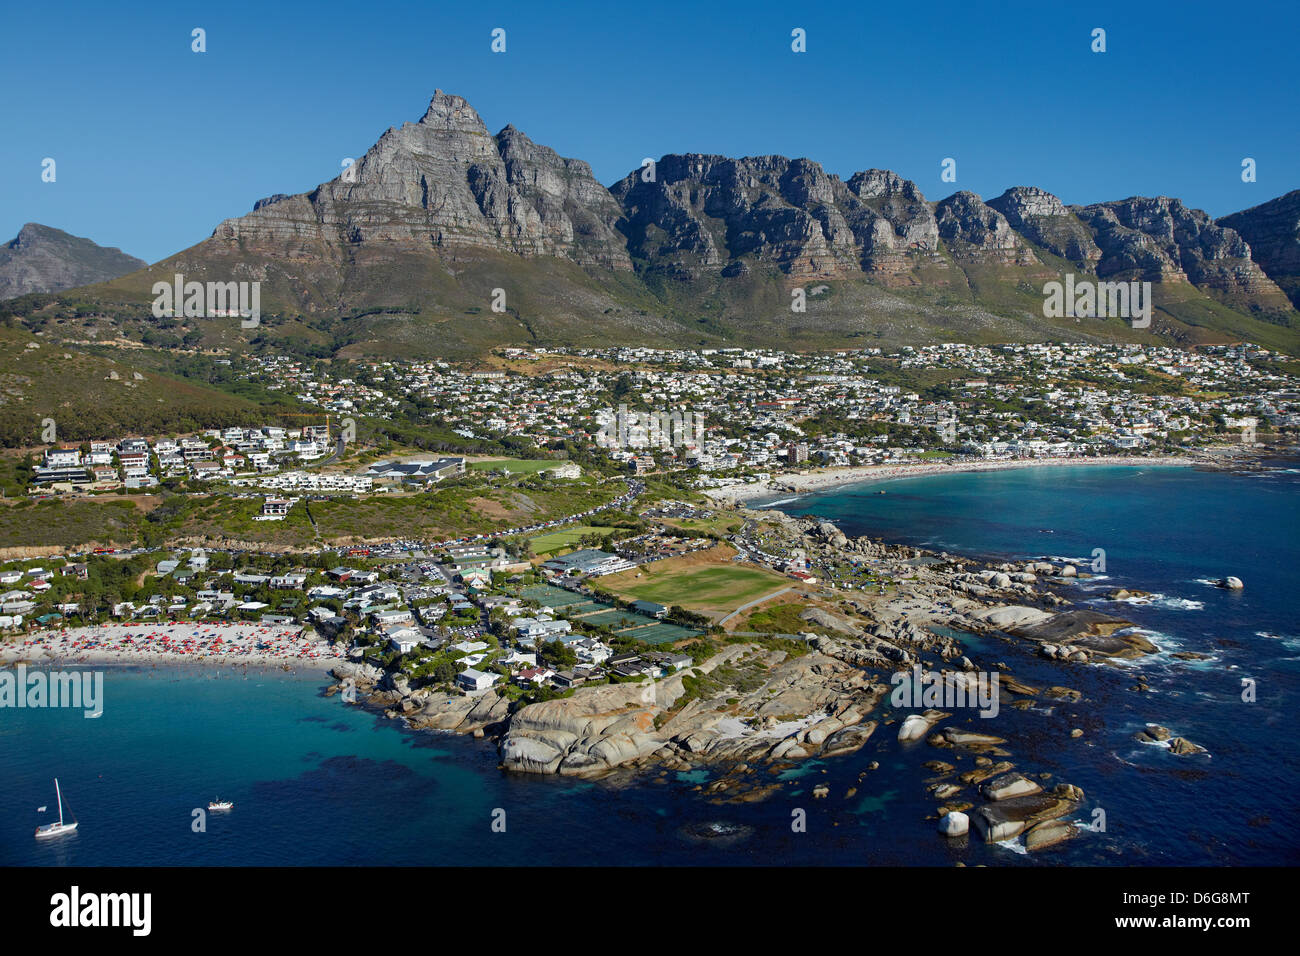 Clifton Beach (à gauche) et Camps Bay (à droite), la Montagne de la table, et les douze apôtres, Le Cap, Afrique du Sud - vue aérienne Banque D'Images